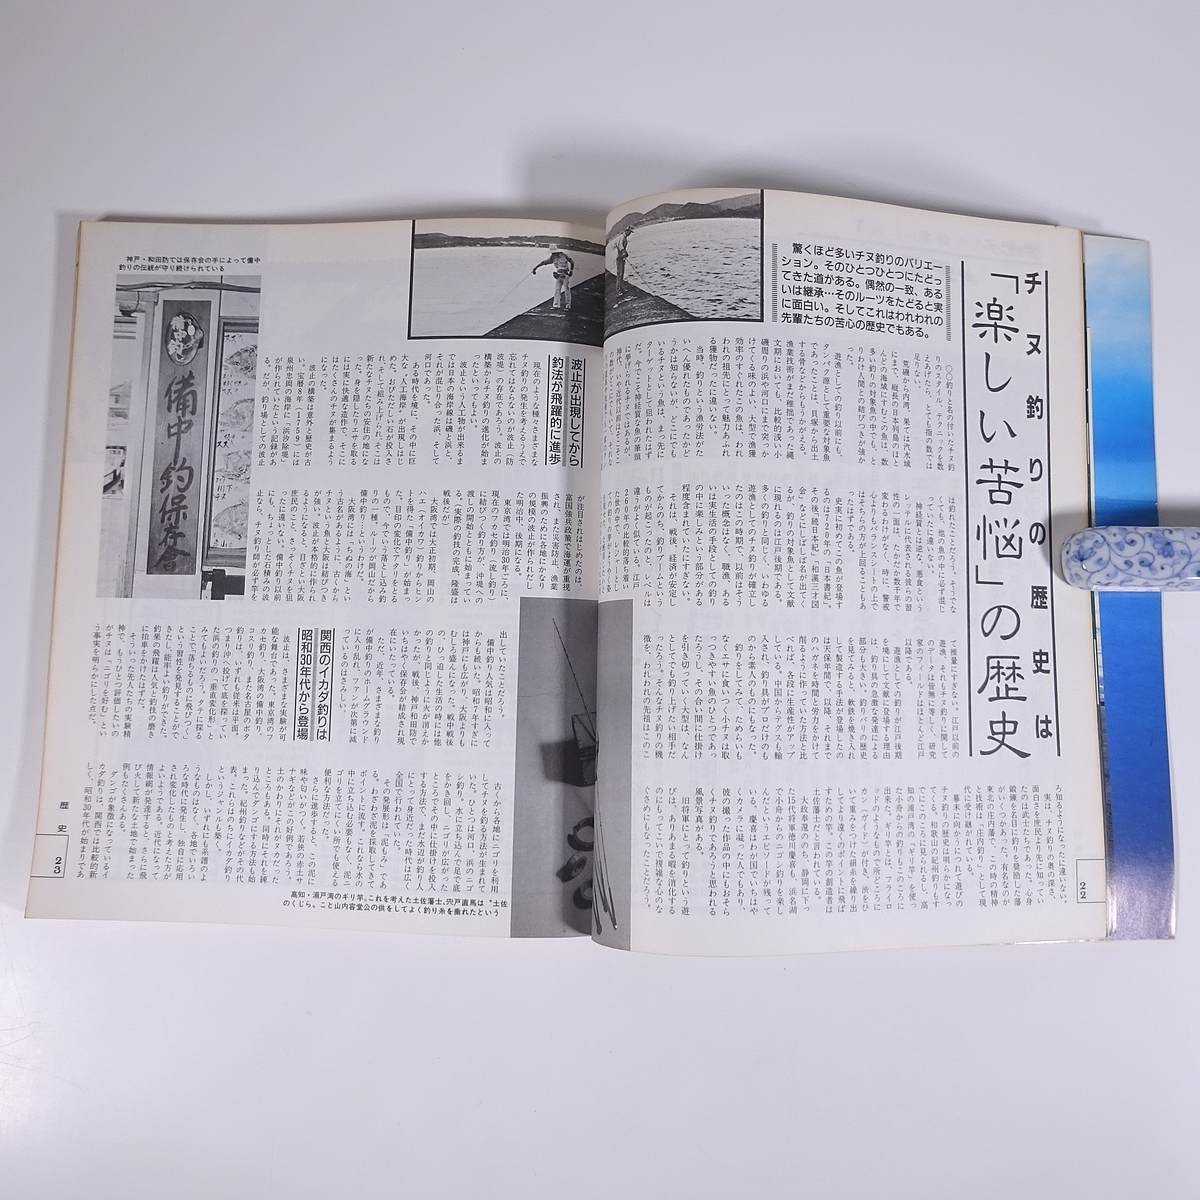 新 チヌ クロダイのすべて 新魚シリーズ1 週刊釣りサンデー別冊 1987 大型本 つり 釣り フィッシング_画像8